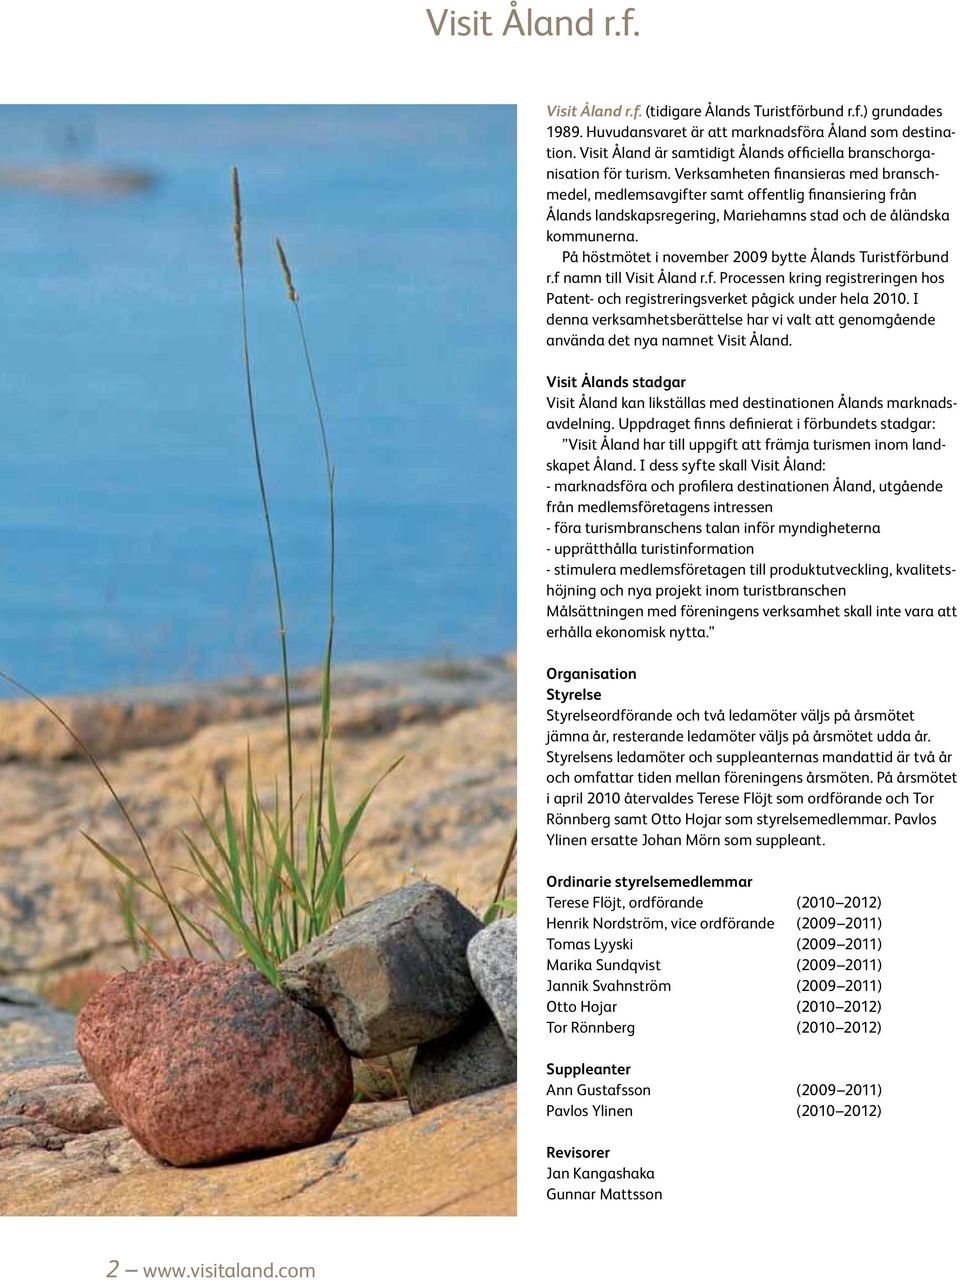 Verksamheten finansieras med branschmedel, medlemsavgifter samt offentlig finansiering från Ålands landskapsregering, Mariehamns stad och de åländska kommunerna.